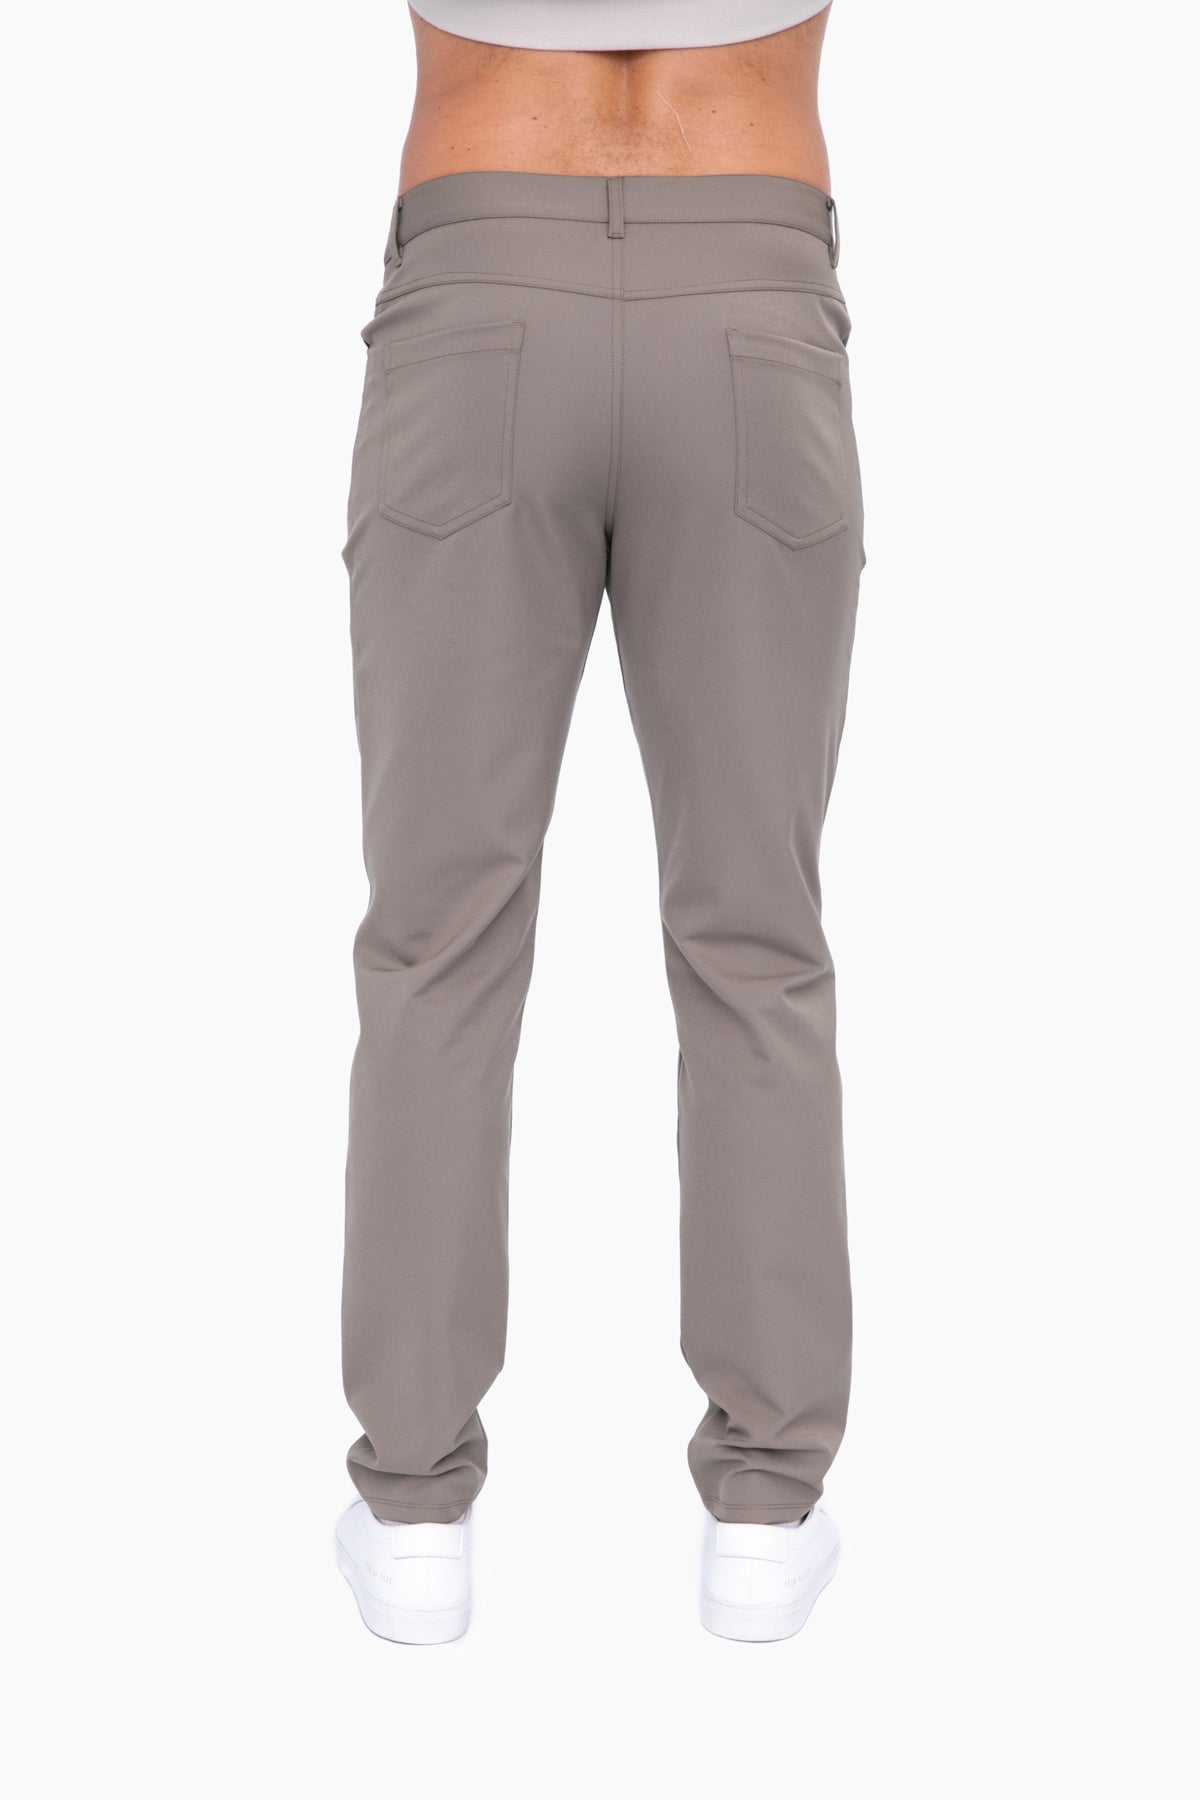 MEN'S - 5 Pocket Golf Pants - Olive